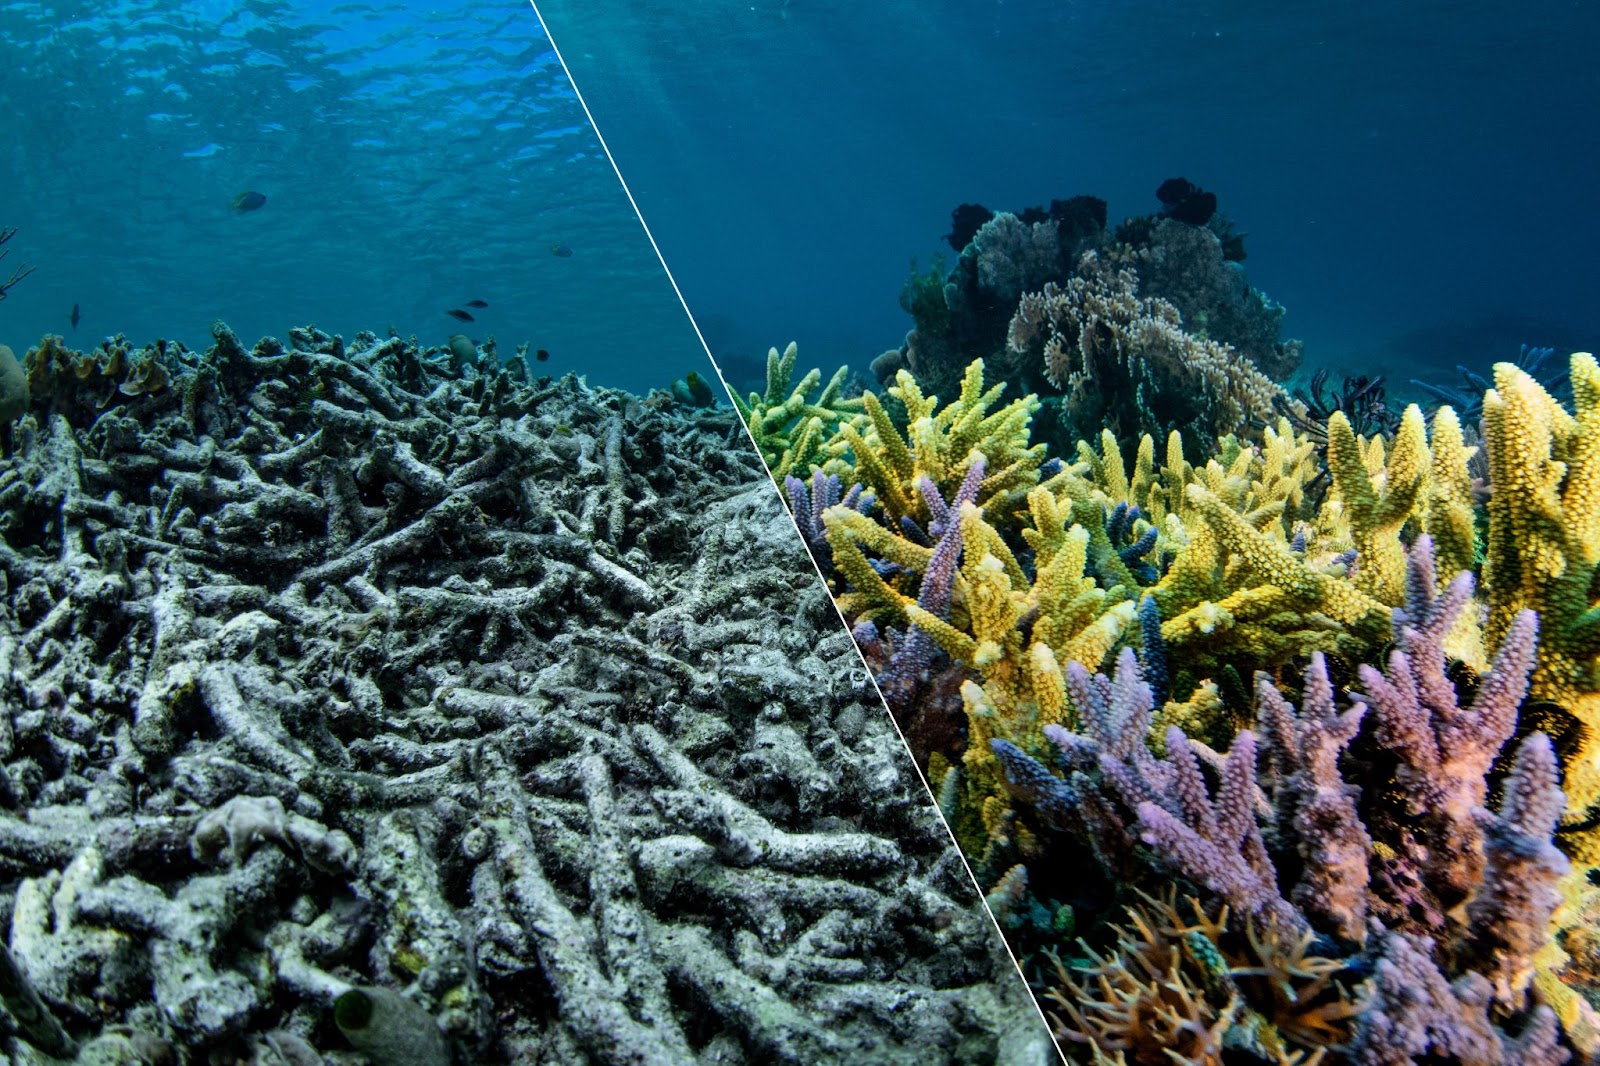 Un'immagine di corallo divisa a metà: a sinistra il corallo grigio eincolore è collassato mentre il mare si increspa sopra di lui. A destravediamo il corallo dritto, vibrante di giallo, viola e rosa. Un contrastotra un corallo morente e un corallosano.